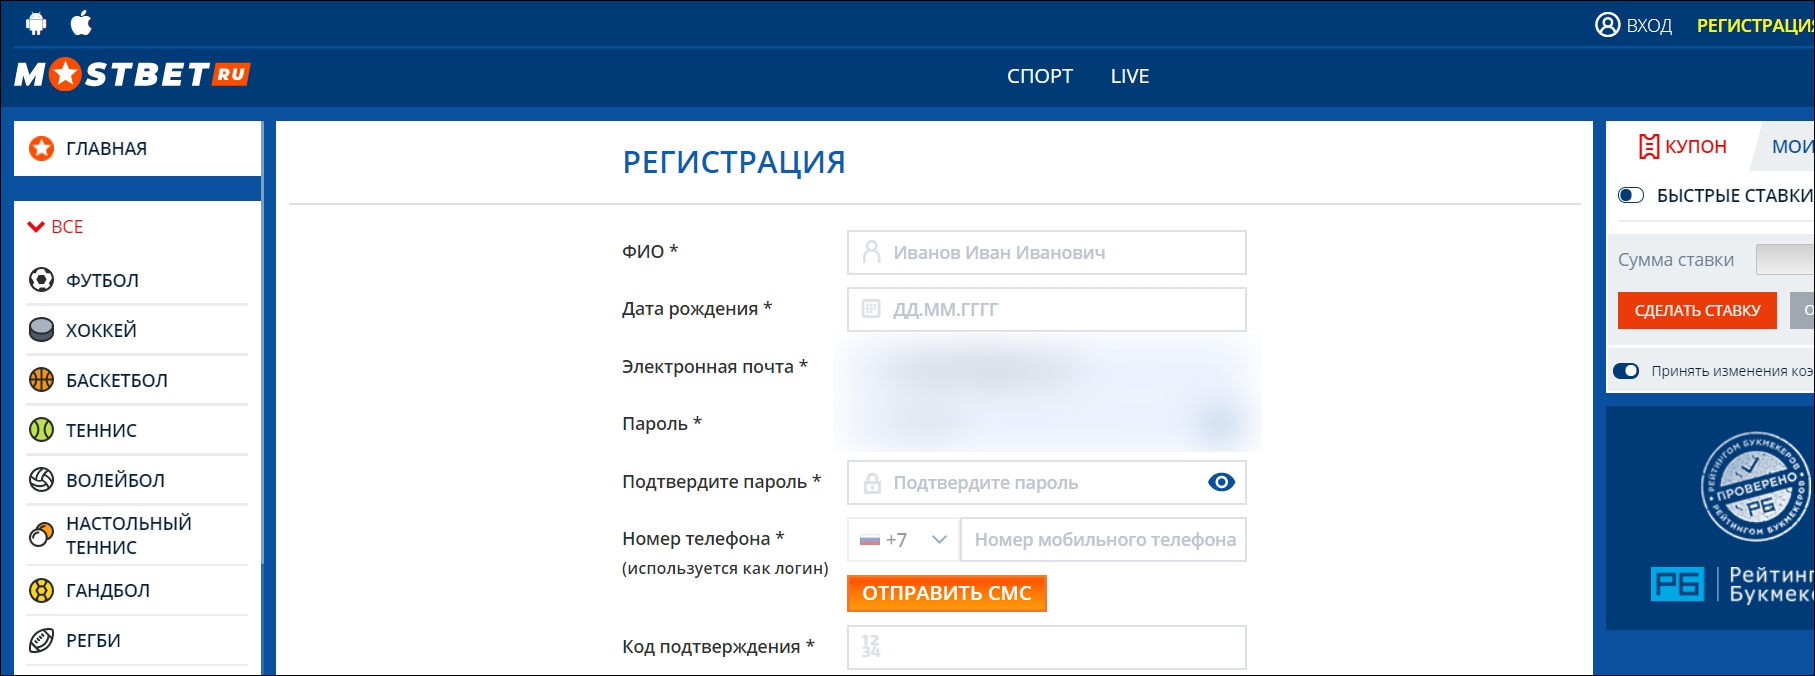 мостбет официальный сайт вход россия 1bookmaker mostbet